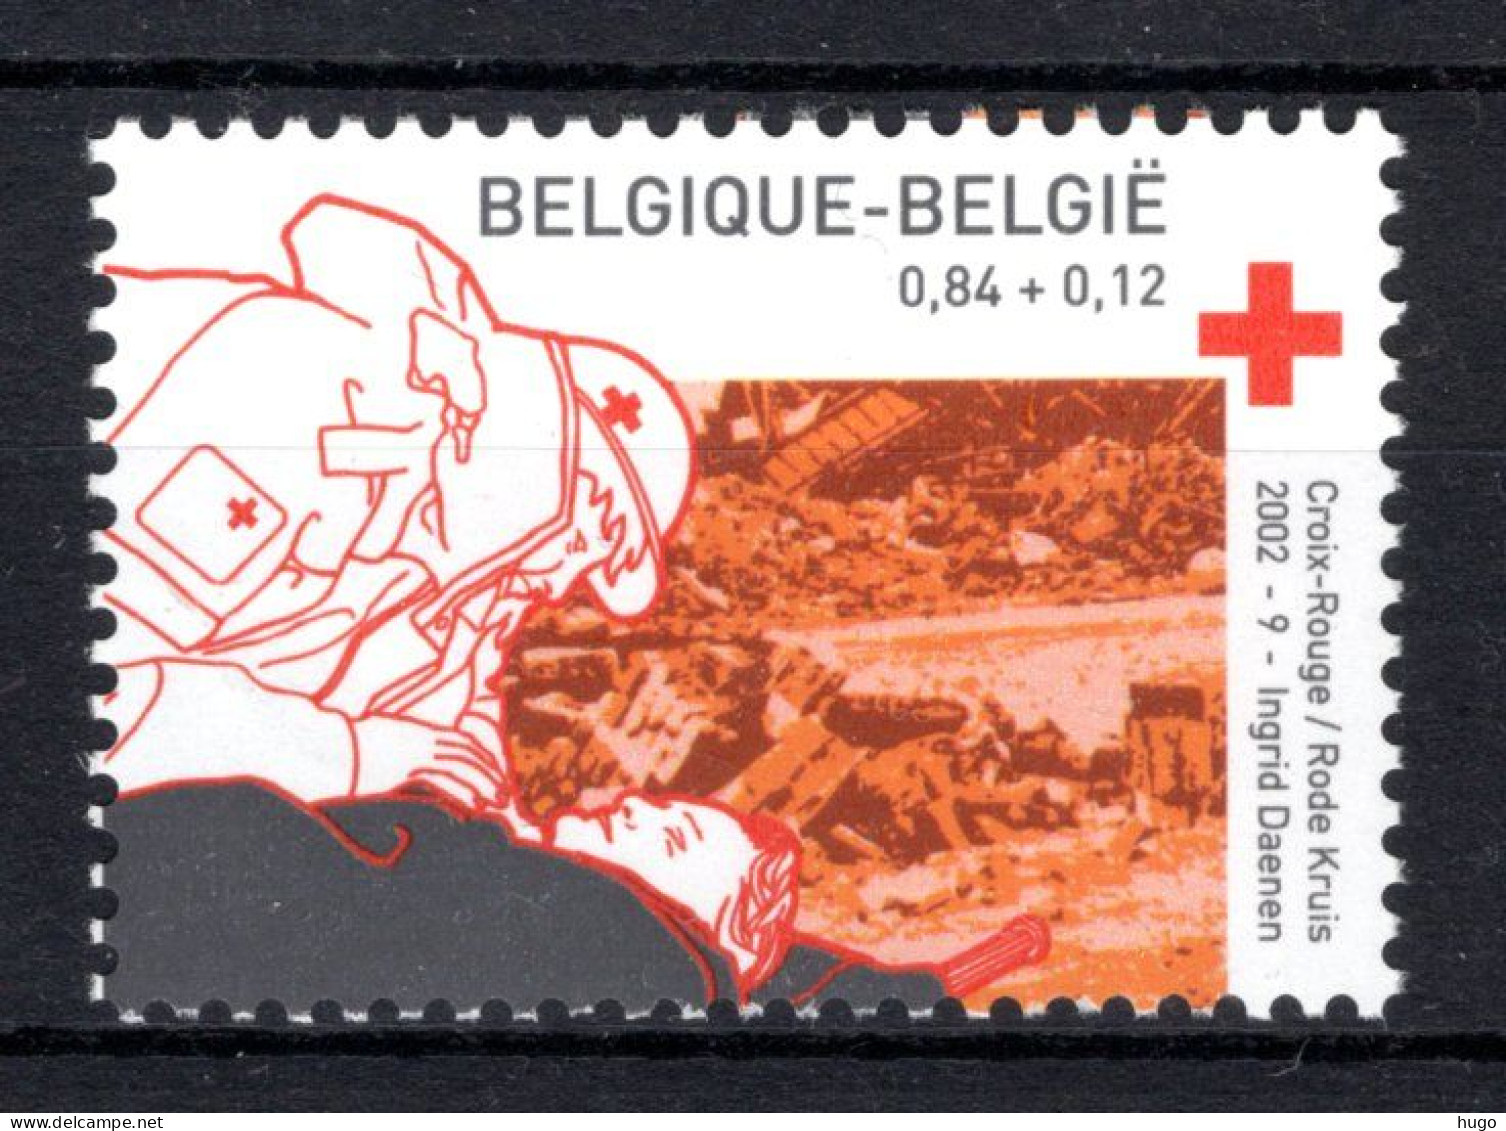 3072 MNH** 2002 - Het Belgische Rode Kruis - Nuevos